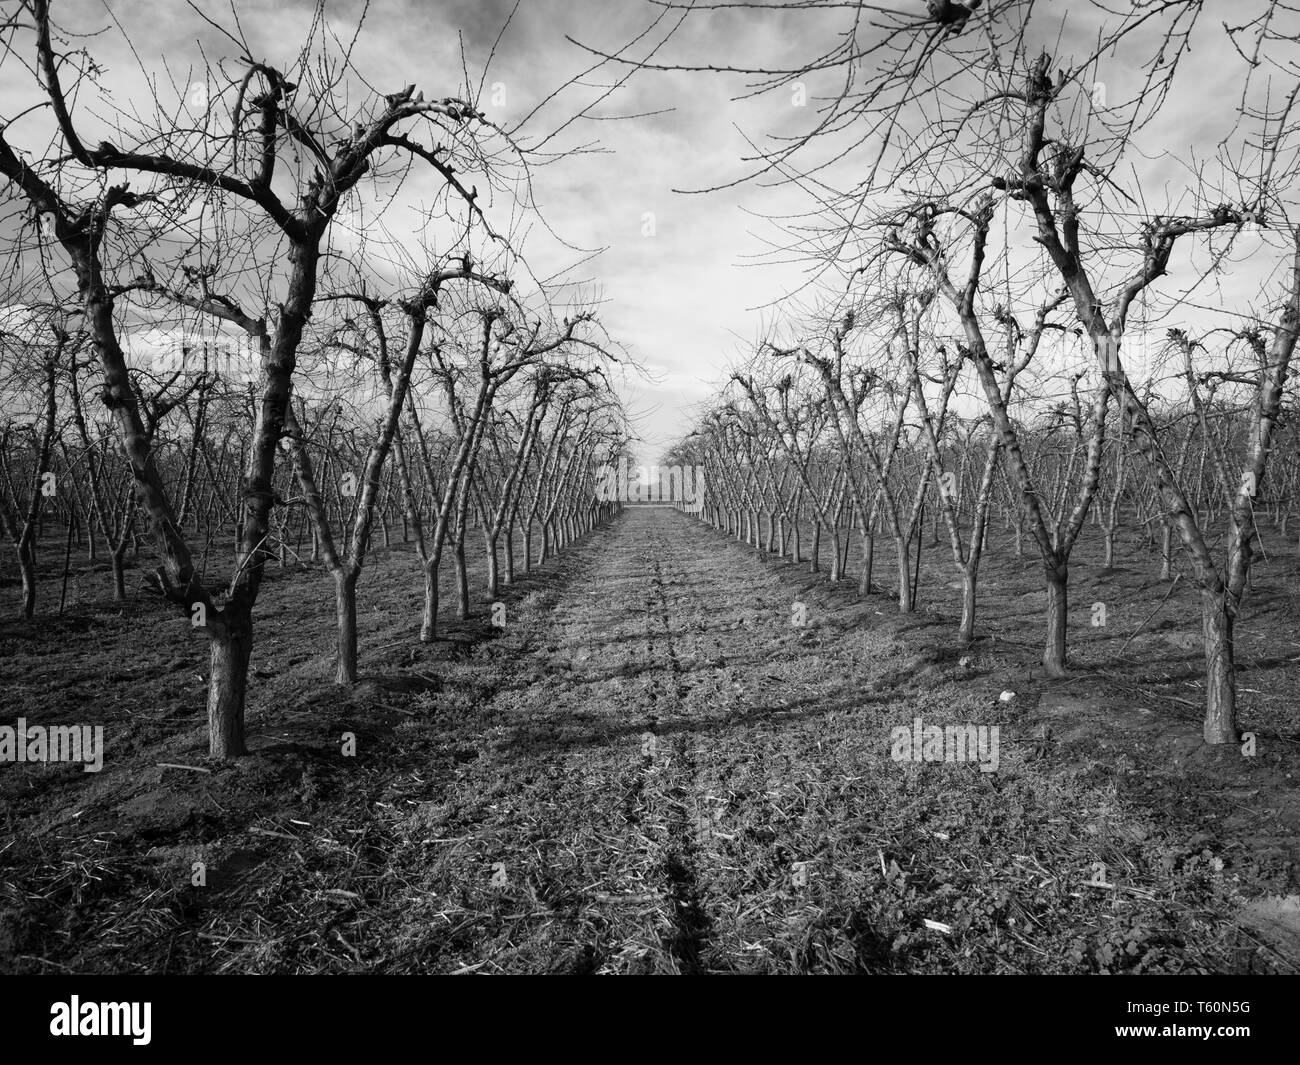 Rows of nut trees, San Joaquin Valley. Stock Photo